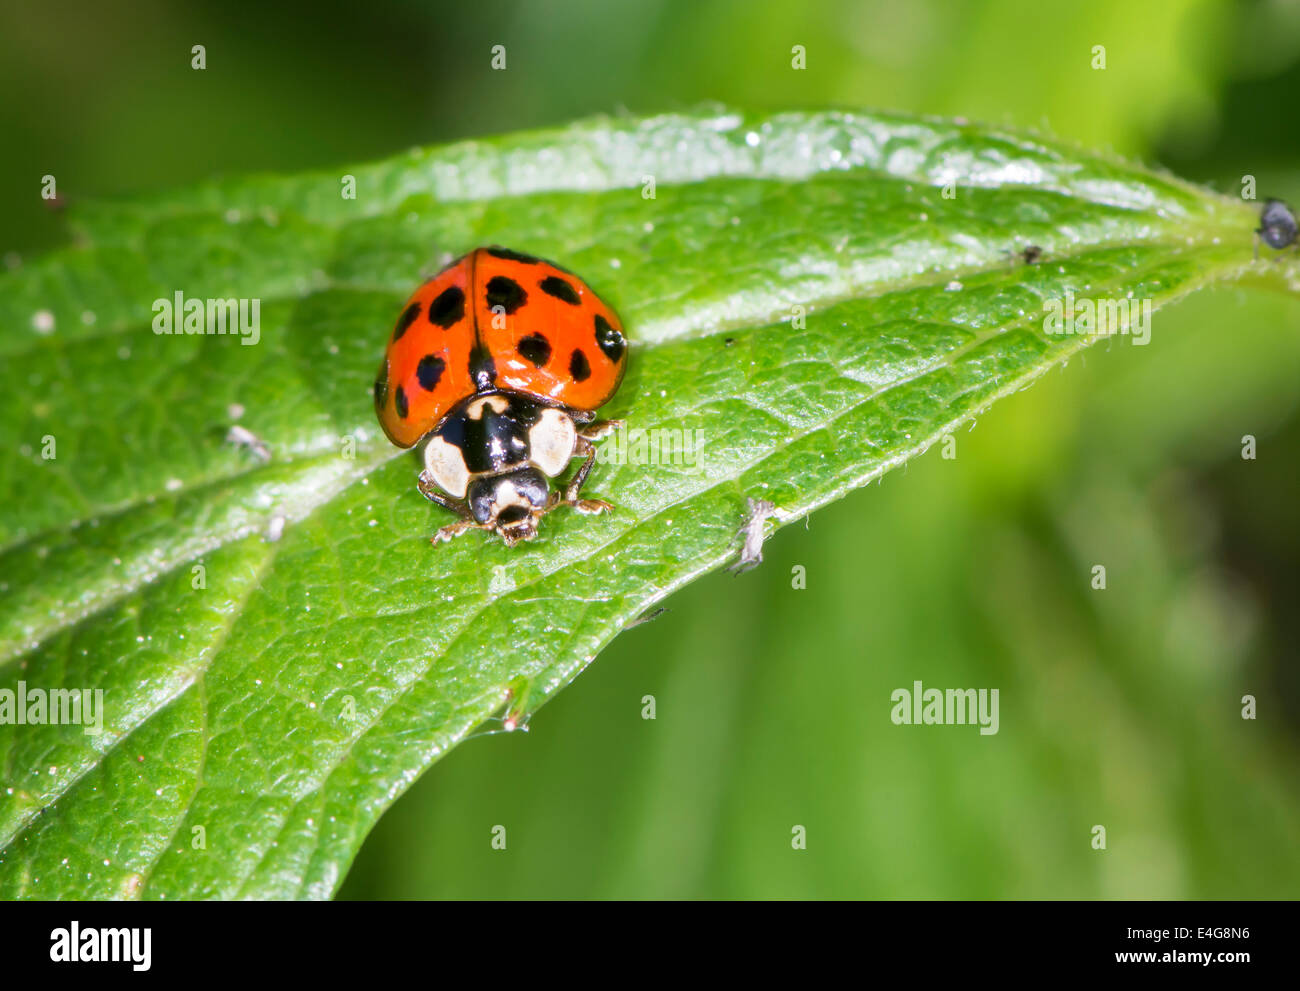 Ladybug seduto su una foglia verde Foto Stock